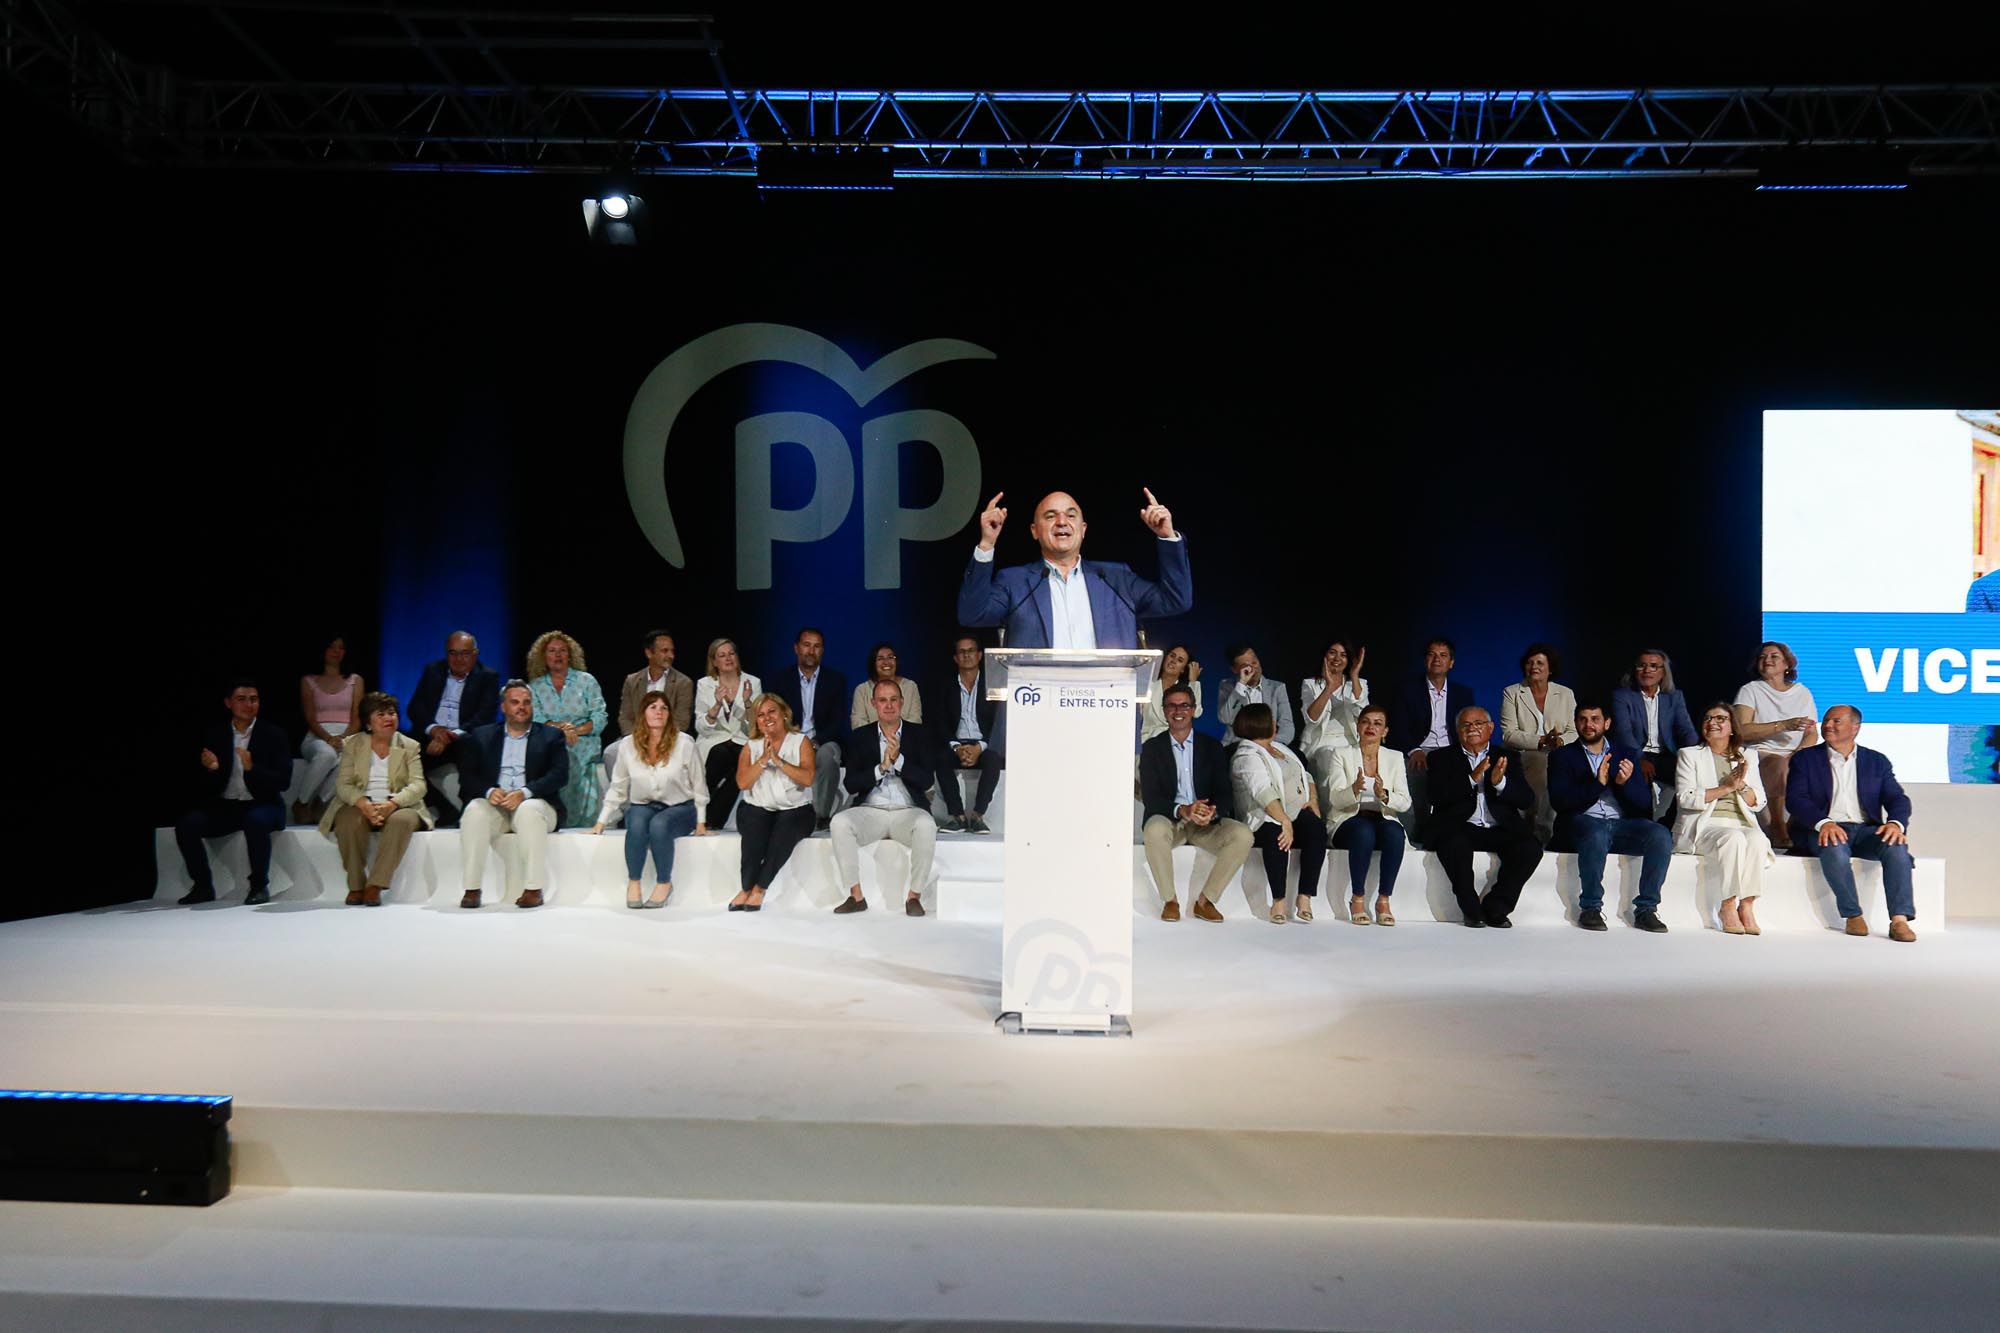 La candidata del PP a la presidencia del Govern balear, Marg Porhens, en Ibiza